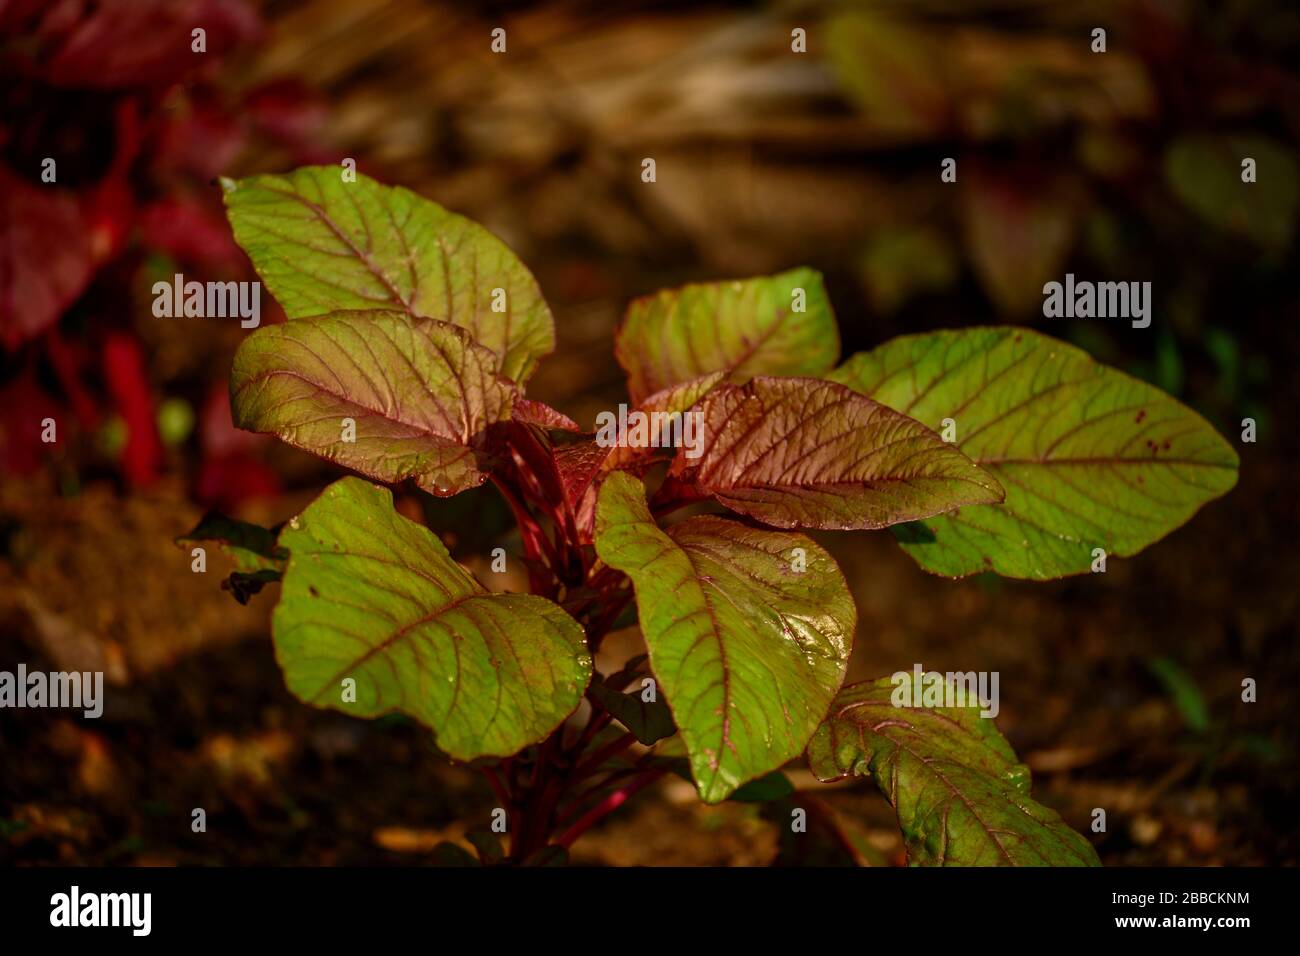 Red spinach, Amaranthus dubius, Stock Photo